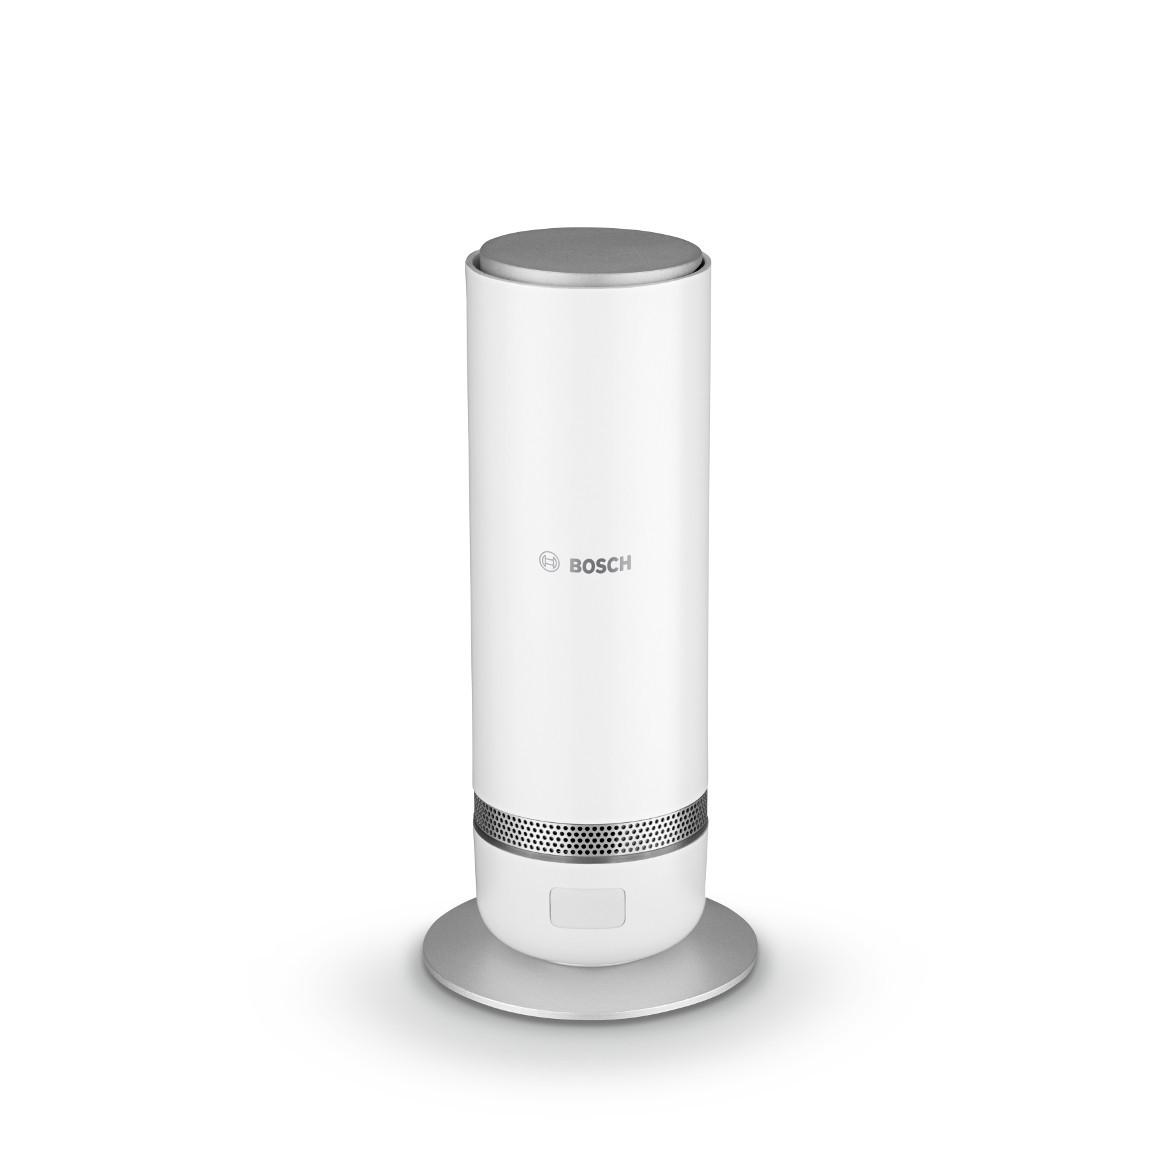 Bosch Smart Home 360° - Innenkamera eingefahren